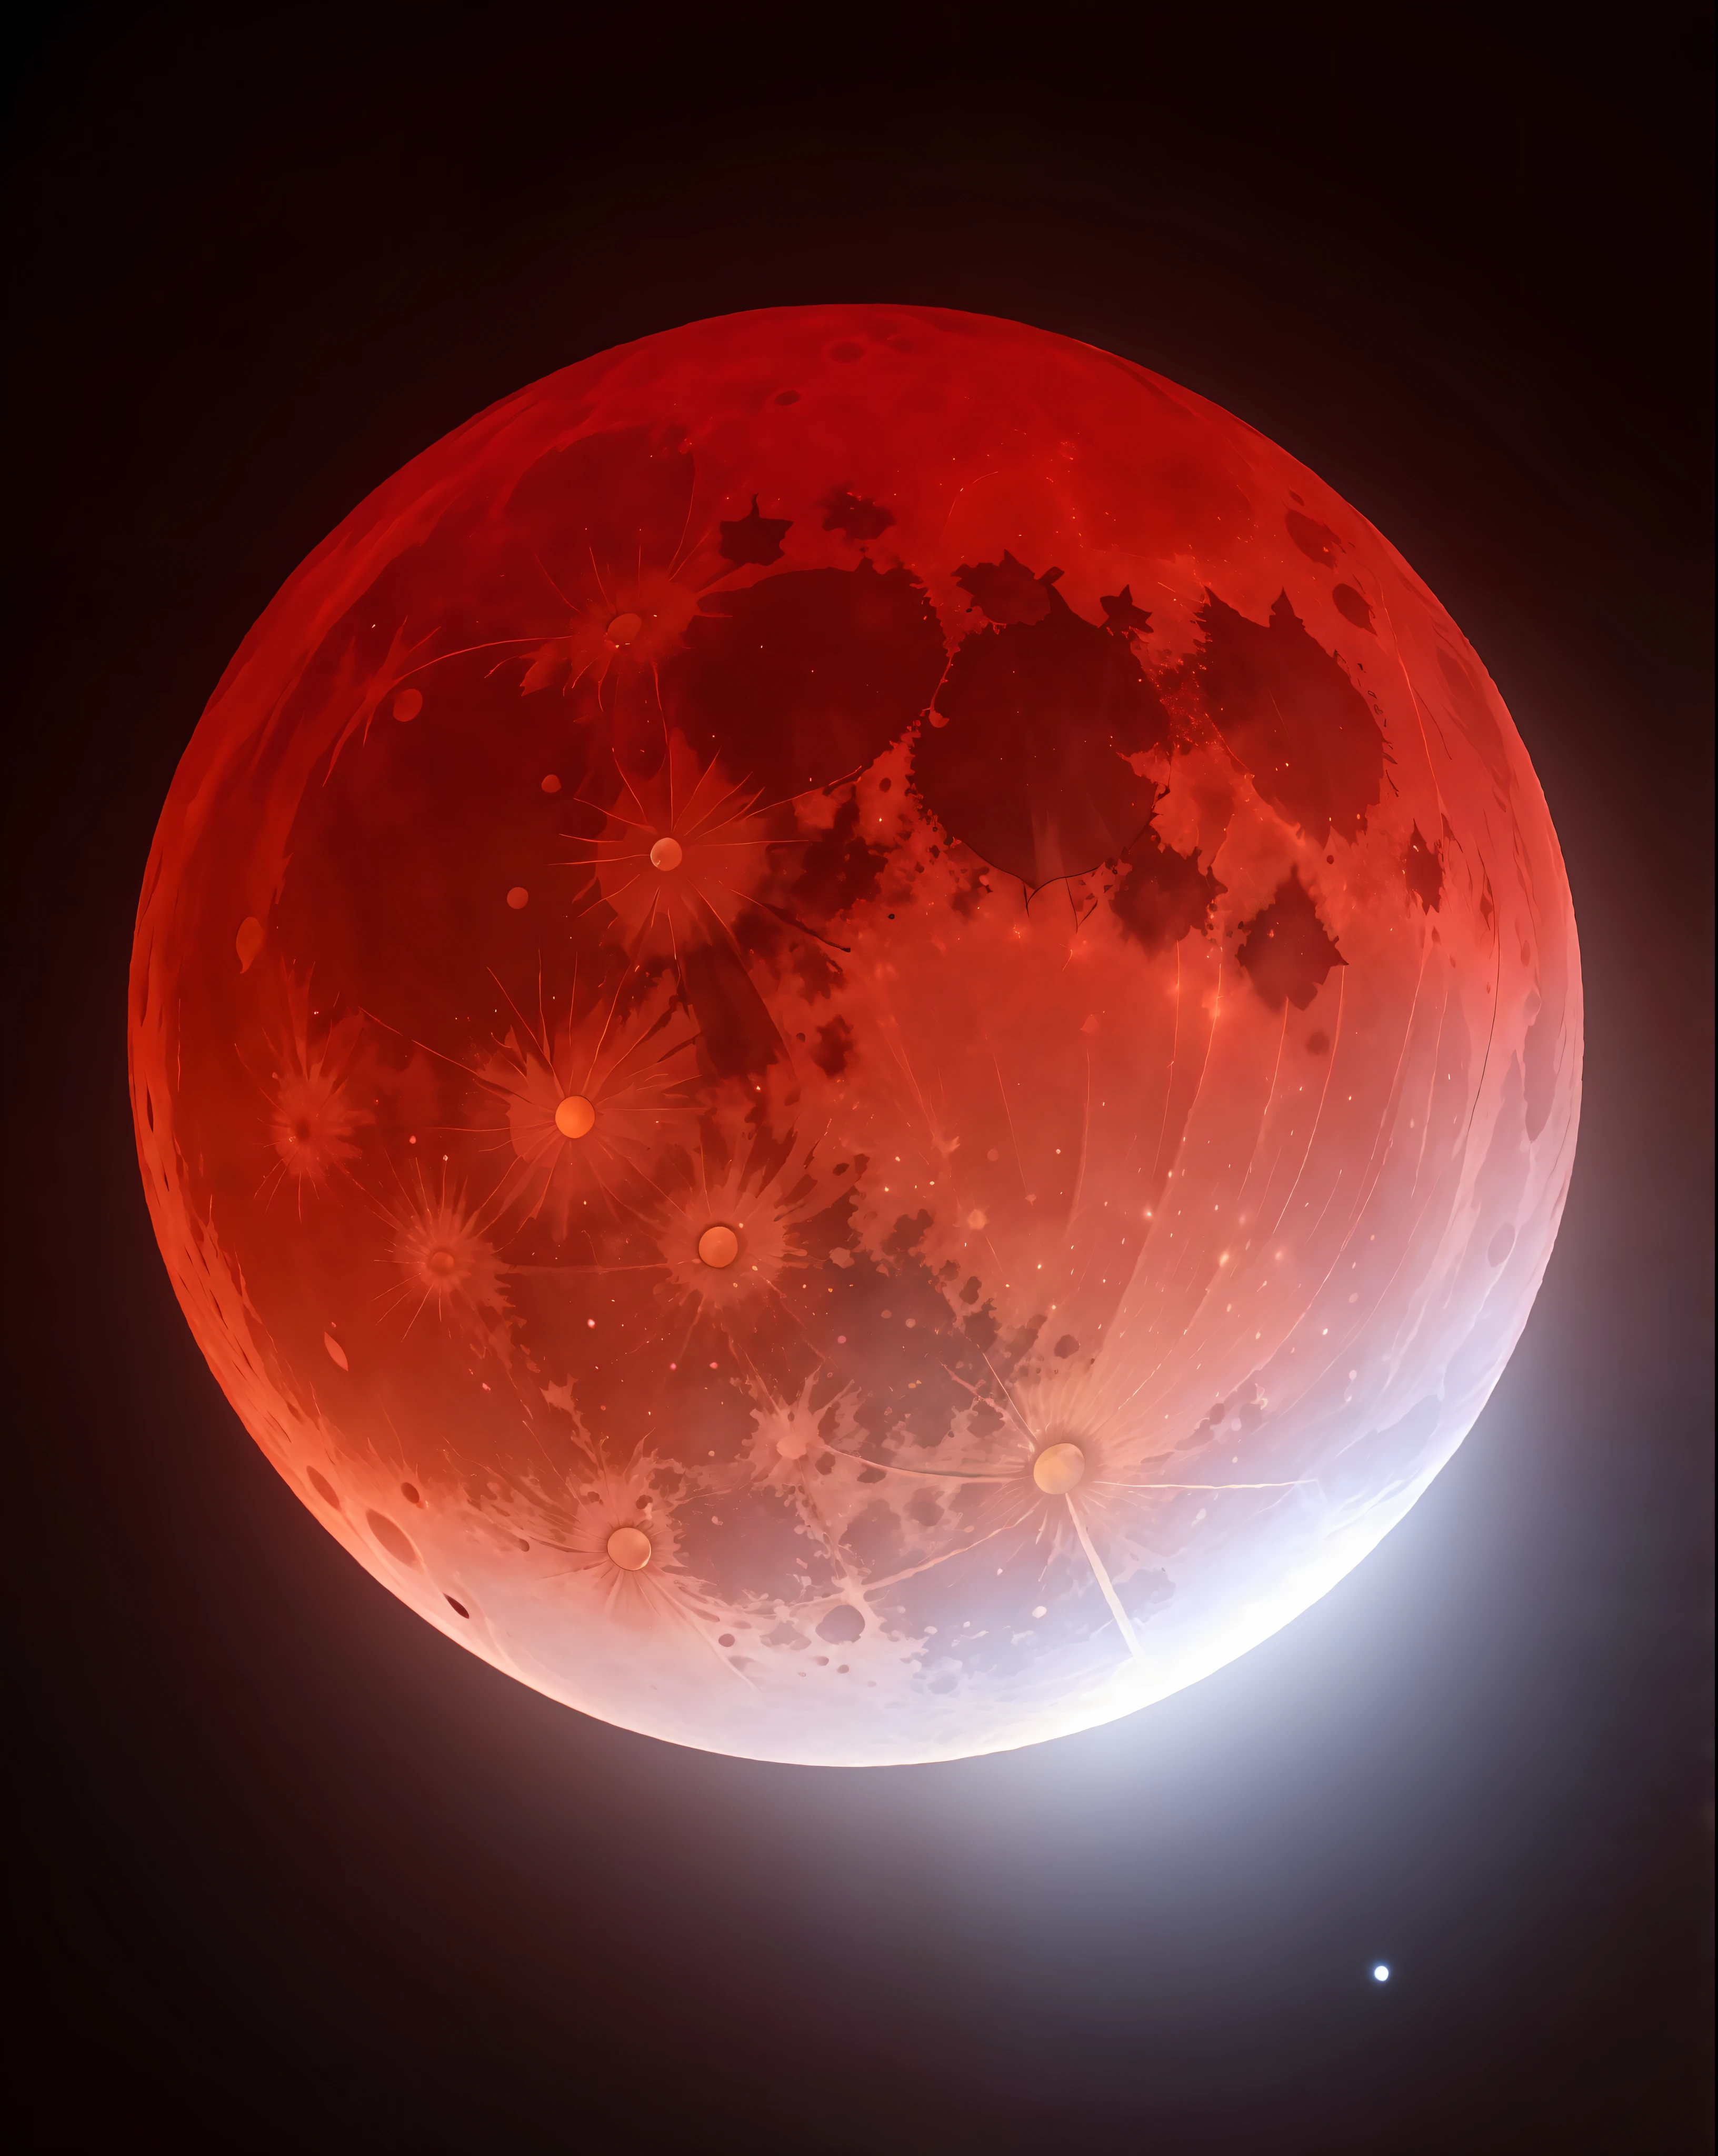 明るい光を放つ赤い月のクローズアップ, 血の満月, 血のように赤い月, ブラッド・ムーン, 血まみれの満月, 巨大な赤い月, 血の月の間, 血の月食, ブラッドムーンを賛美する, 満月の赤い月, 赤い月, 血のように赤い三日月, 月食の核爆発, 赤い月食, ブラッドムーンの背景